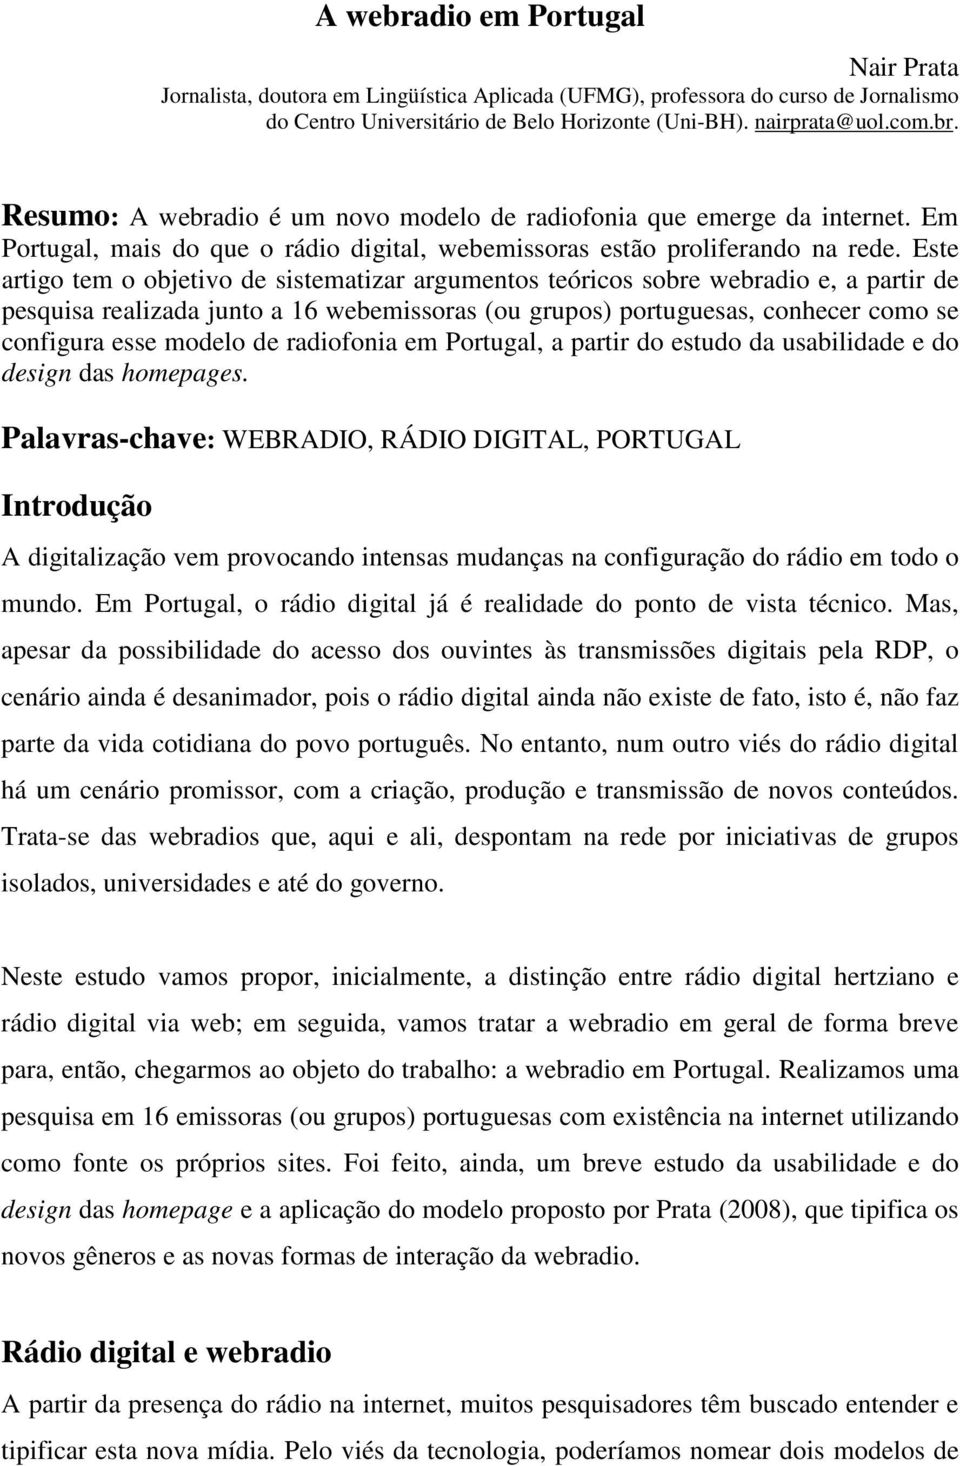 Este artigo tem o objetivo de sistematizar argumentos teóricos sobre webradio e, a partir de pesquisa realizada junto a 16 webemissoras (ou grupos) portuguesas, conhecer como se configura esse modelo